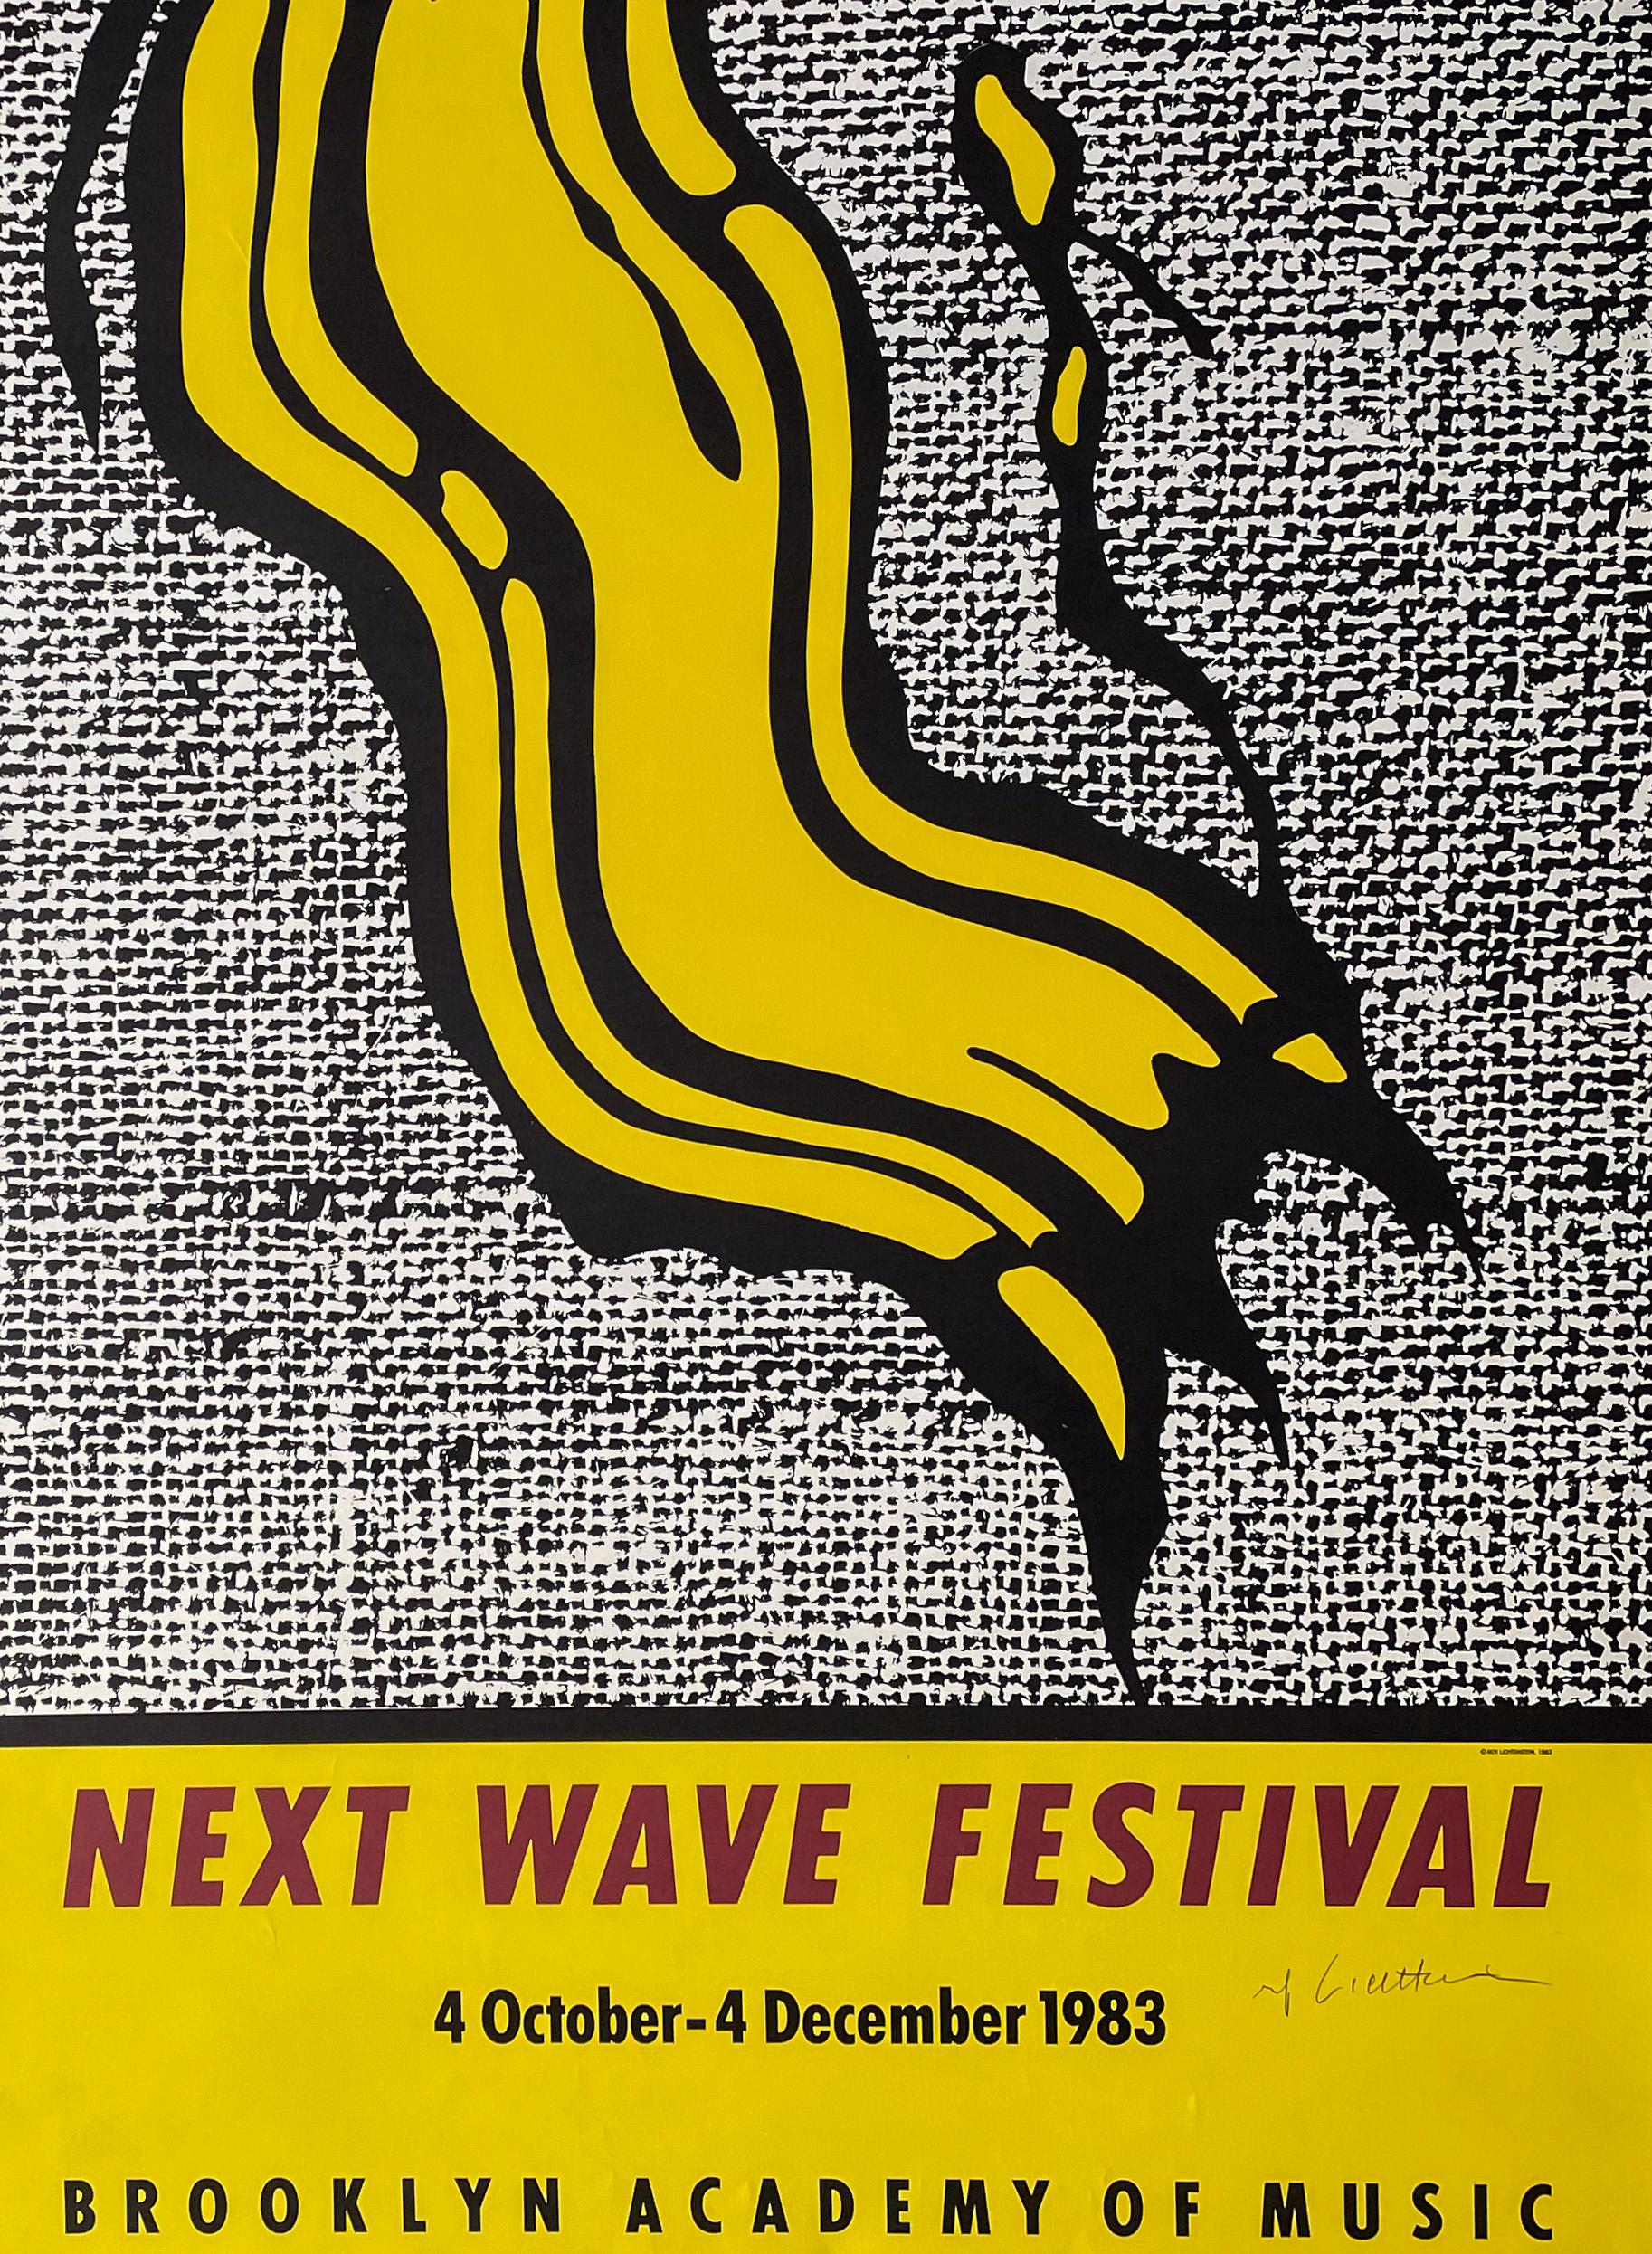 Originalplakat nach einem Bild von Roy Lichtenstein für das erste offizielle Next Wave Festival in der Brooklyn Academy of Music vom 4. Oktober bis 4. Dezember 1983, herausgegeben 1983 vom Next Wave Producers Council in Zusammenarbeit mit dem Next